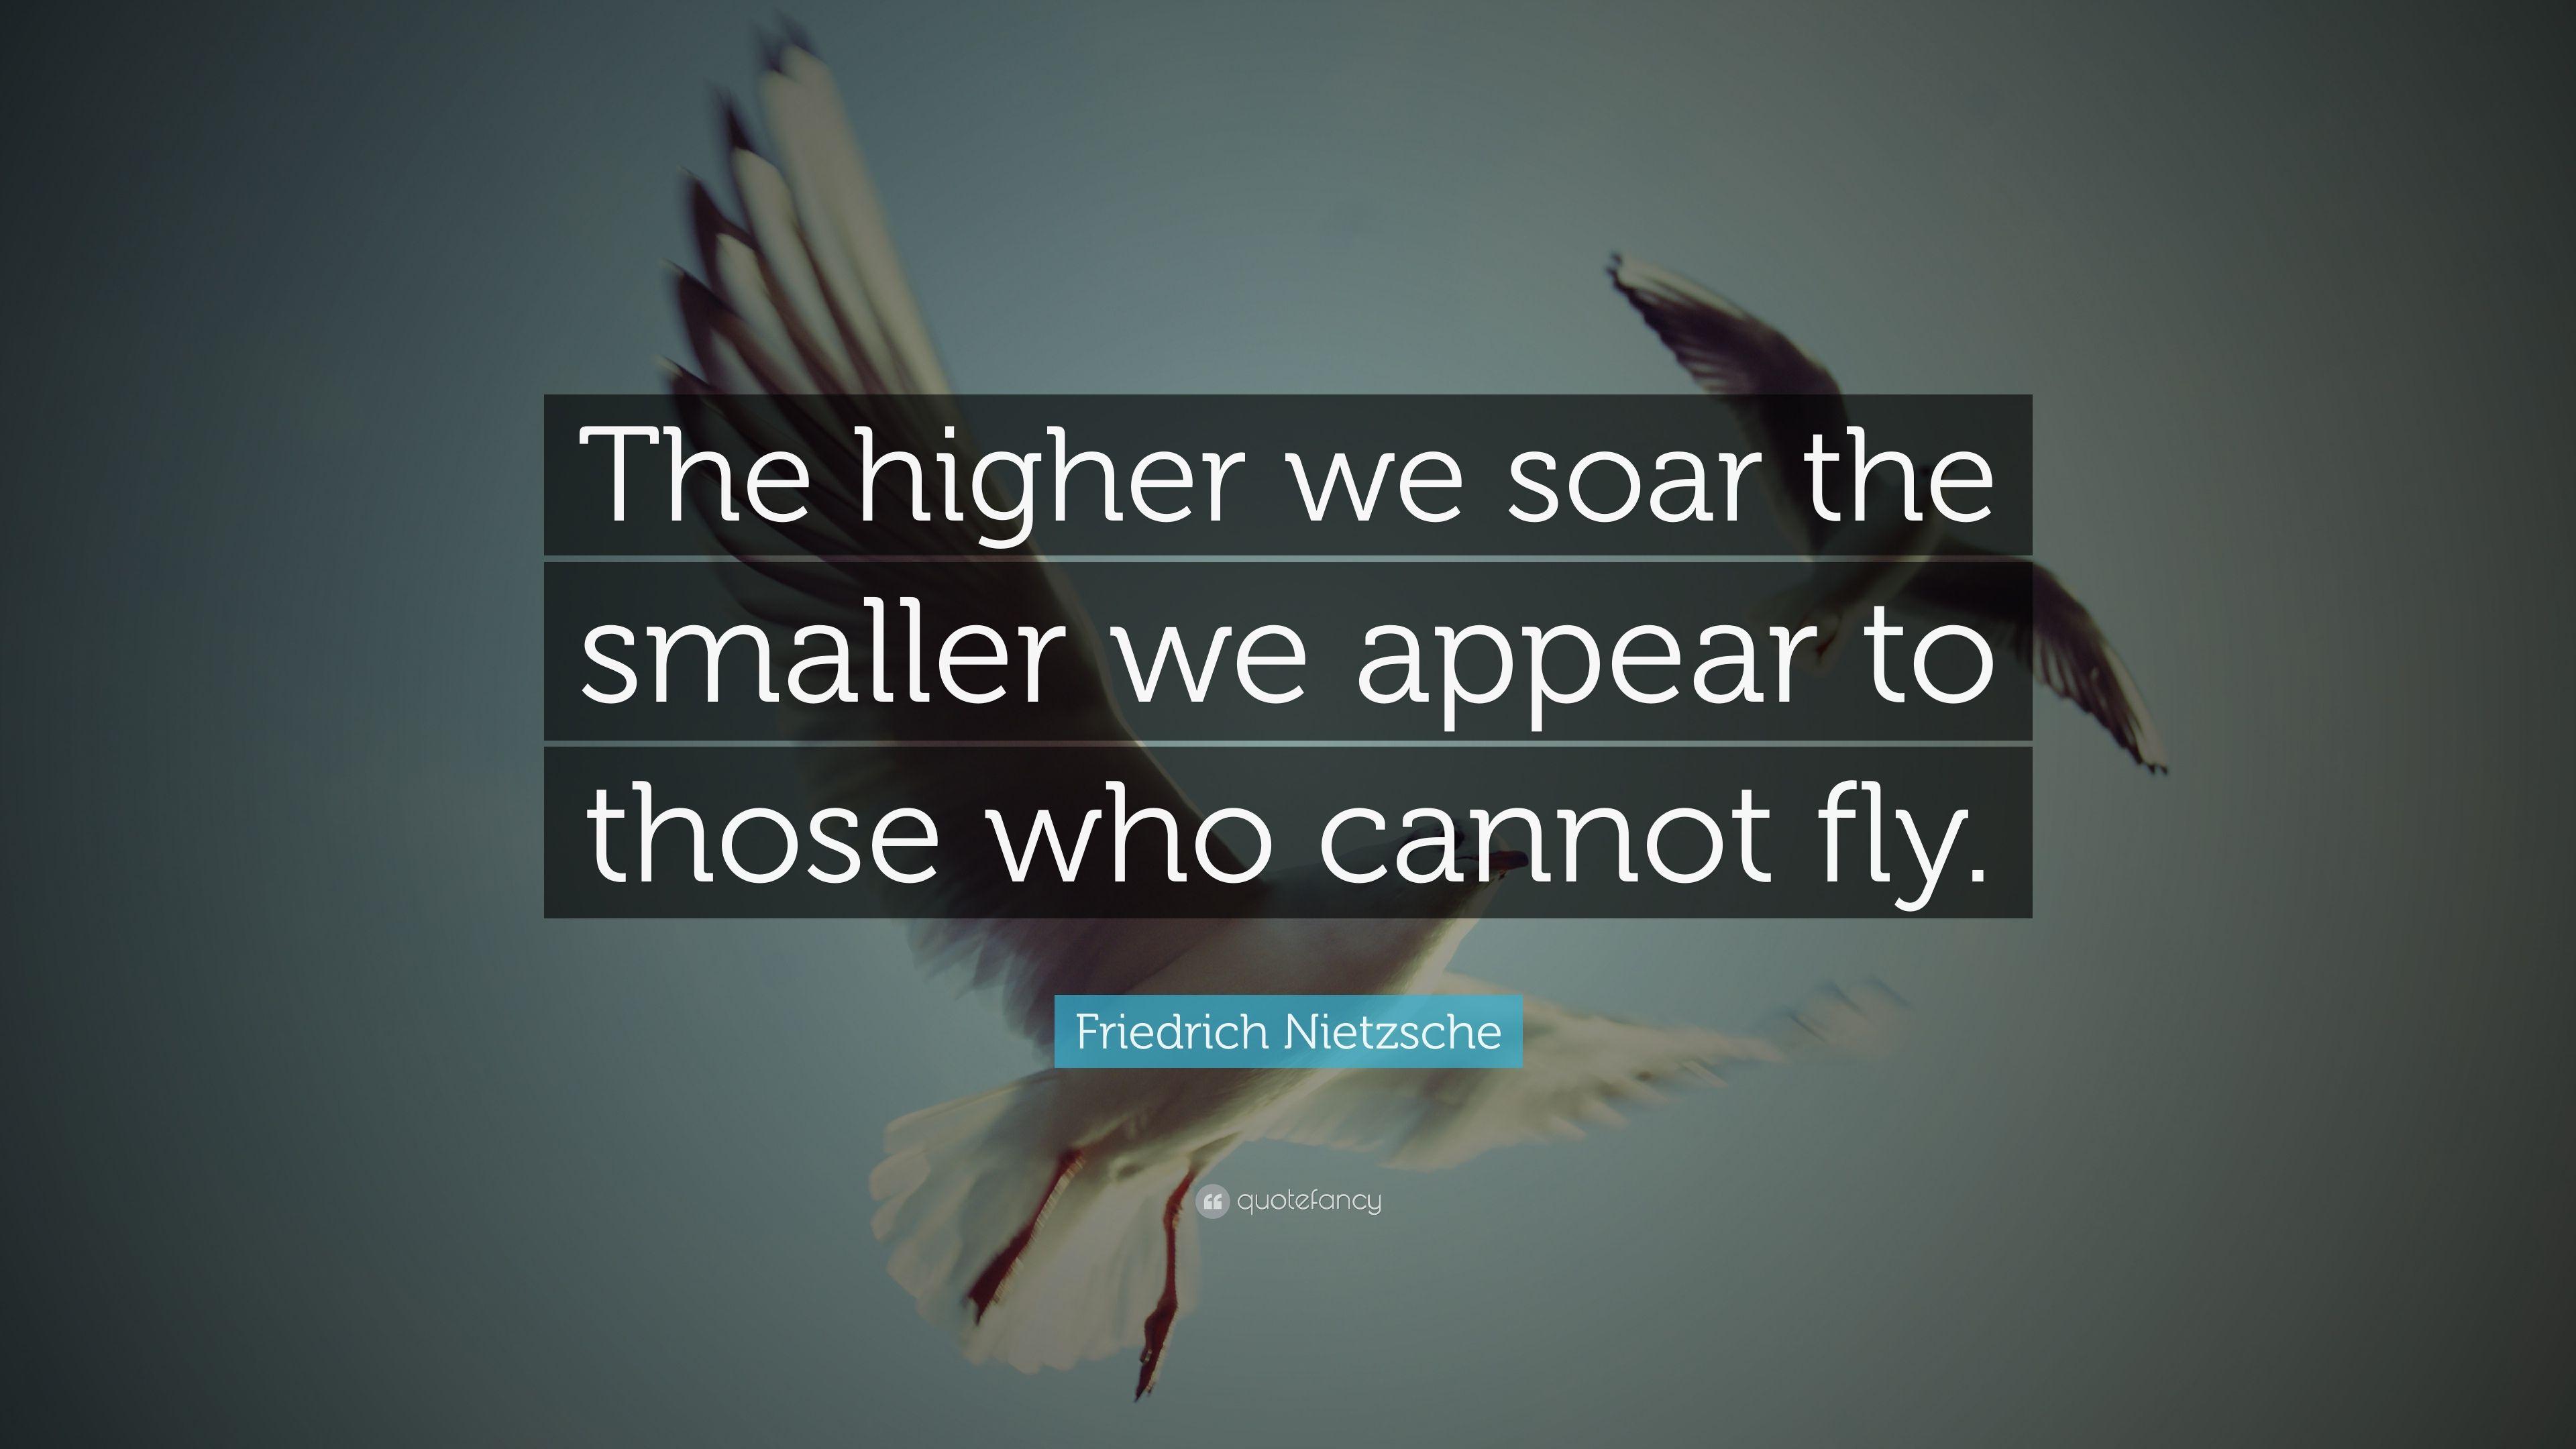 Friedrich Nietzsche Quote: “The higher we soar the smaller we